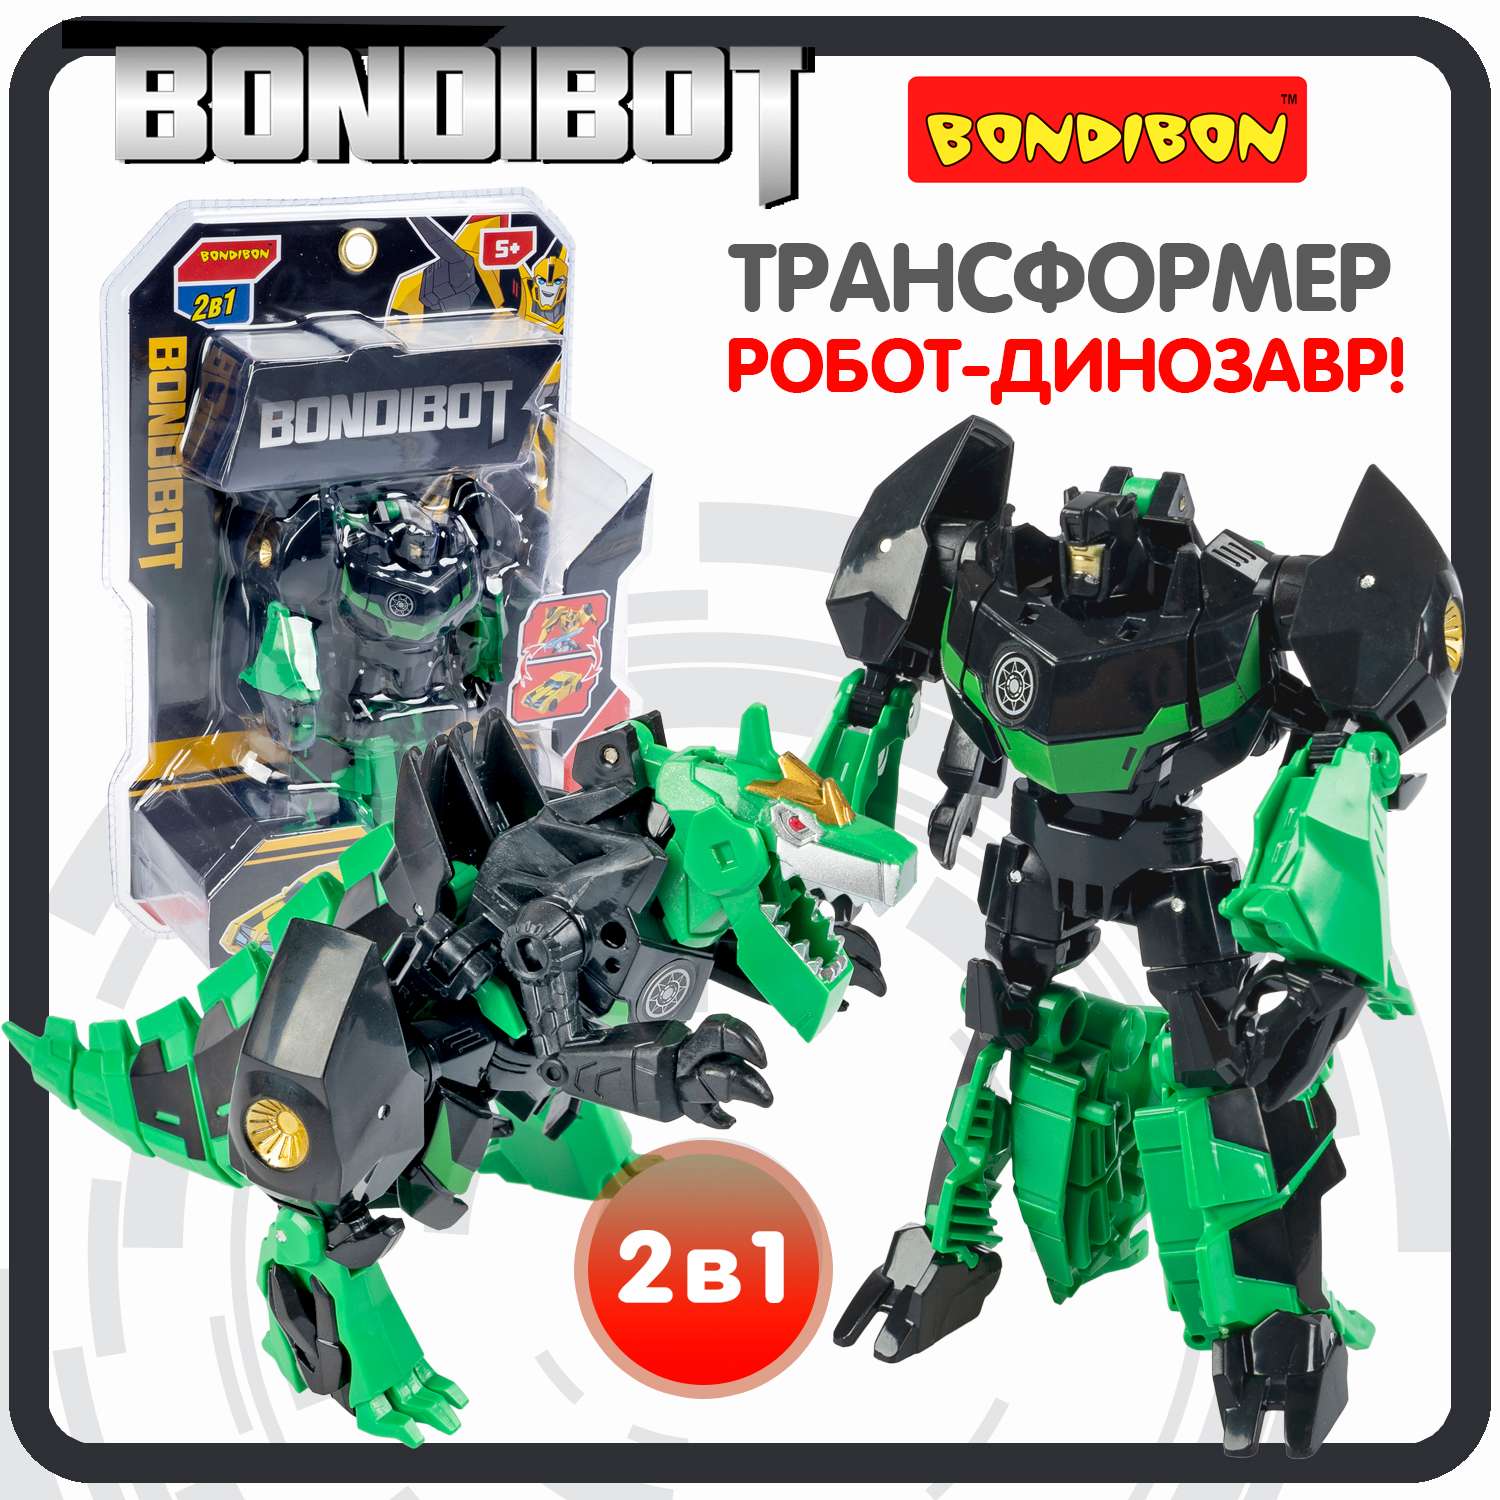 Трансформер BONDIBON BONDIBOT 2 в 1 робот- динозавр чёрно-зелёного цвета - фото 1